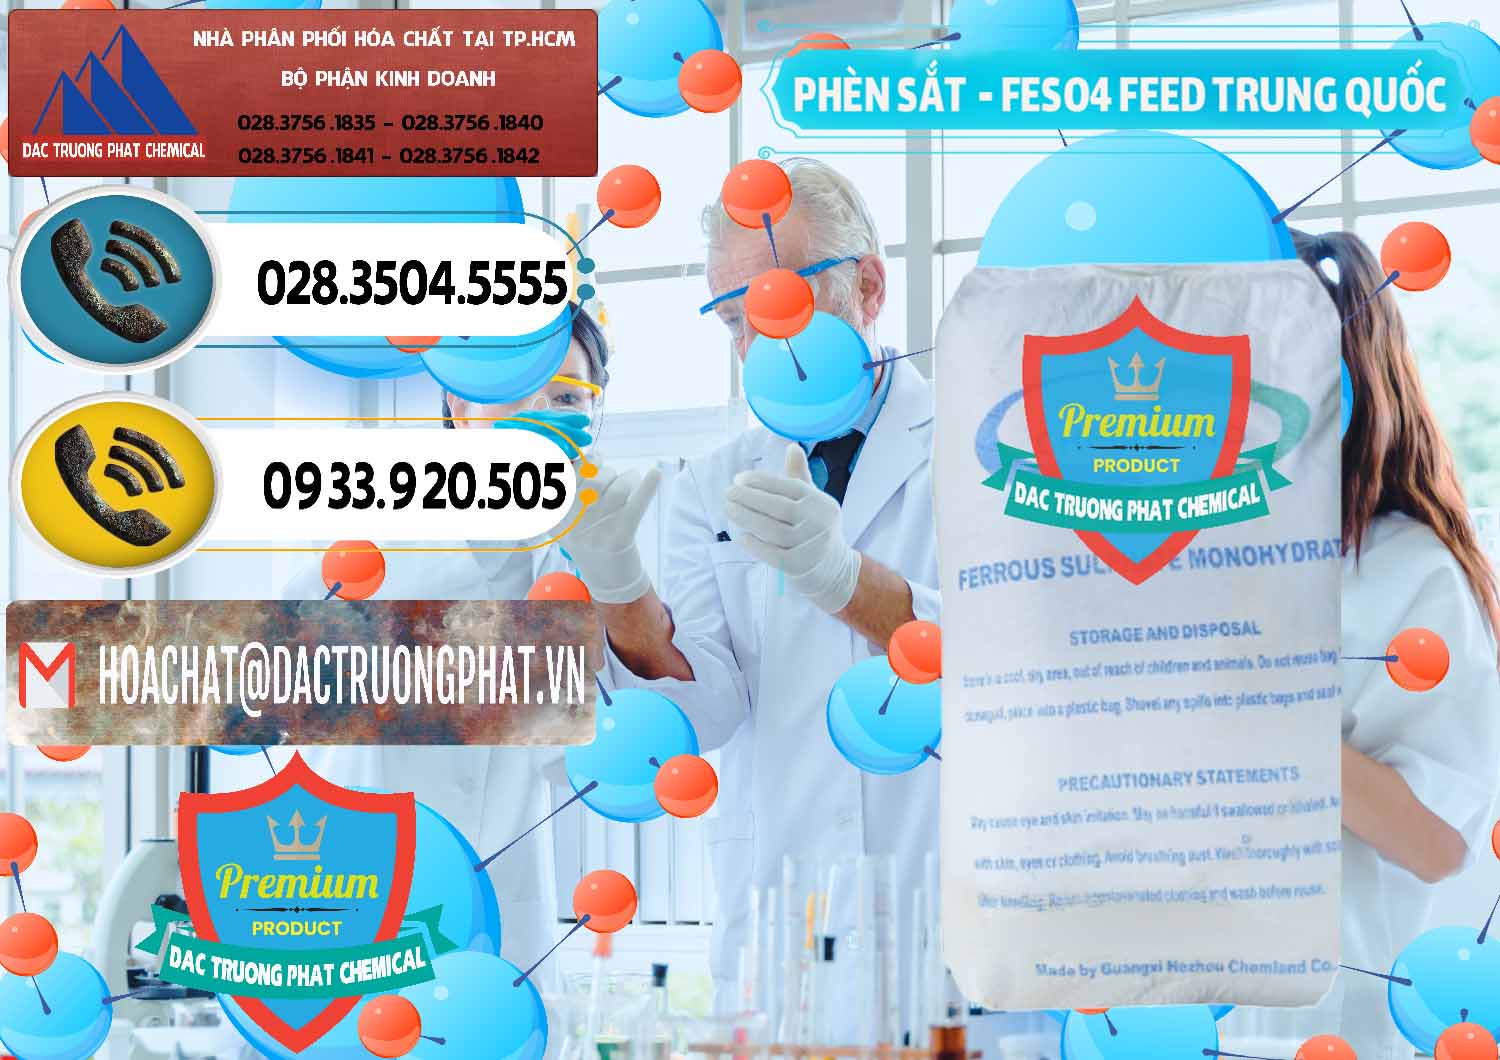 Nơi chuyên bán - phân phối Phèn Sắt - FeSO4.7H2O Feed Grade Chemland Trung Quốc China - 0455 - Chuyên nhập khẩu và phân phối hóa chất tại TP.HCM - hoachatdetnhuom.vn